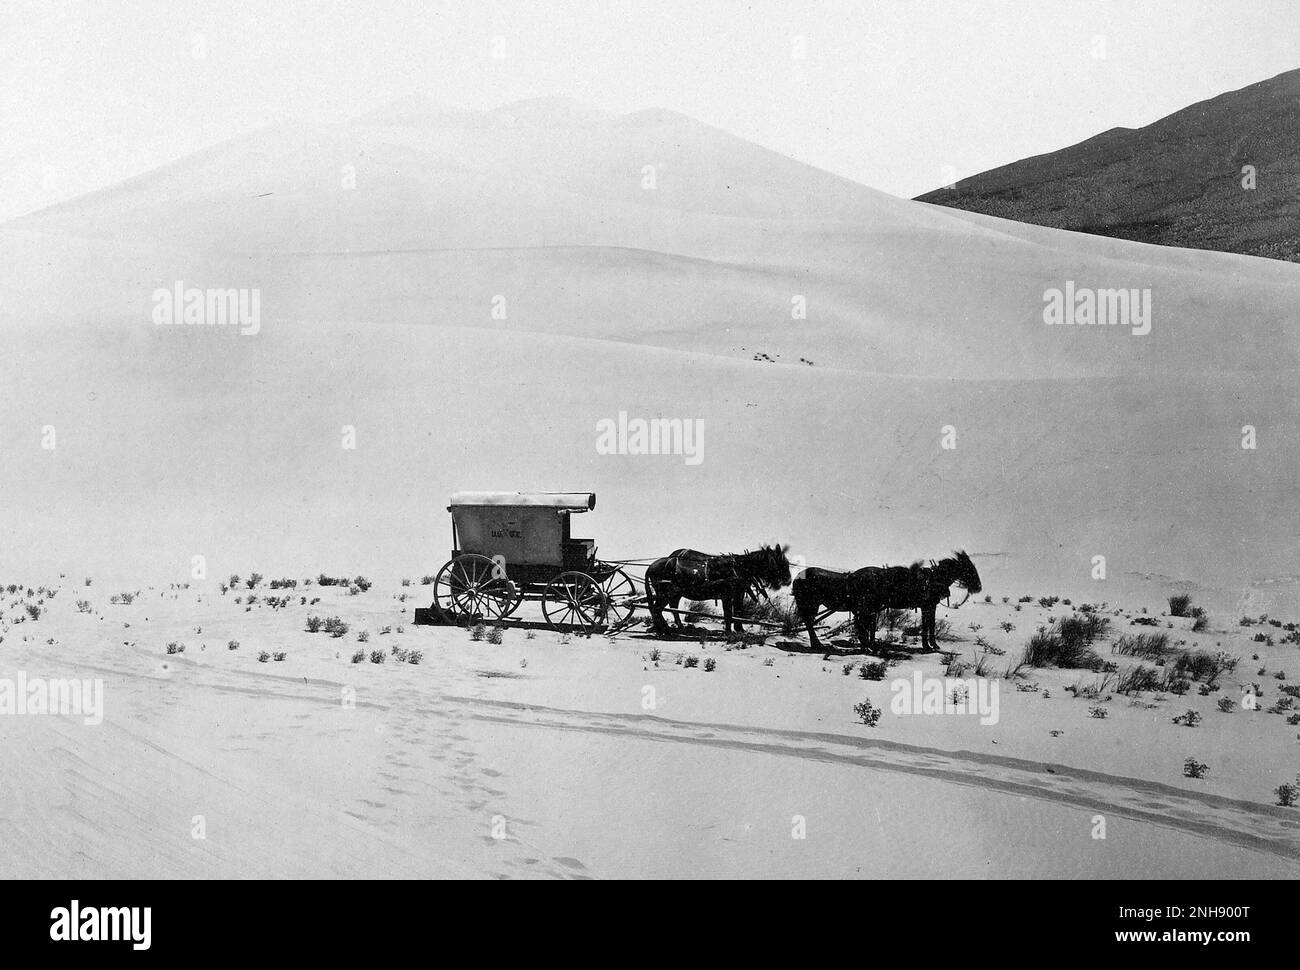 Desert Sand Hills in der Nähe von Sink of Carson, Nevada. Fotografiert von Timothy H. O'Sullivan (Amerikaner, ca. 1840-1882); 1867. Silberdruck aus Albumen. Stockfoto